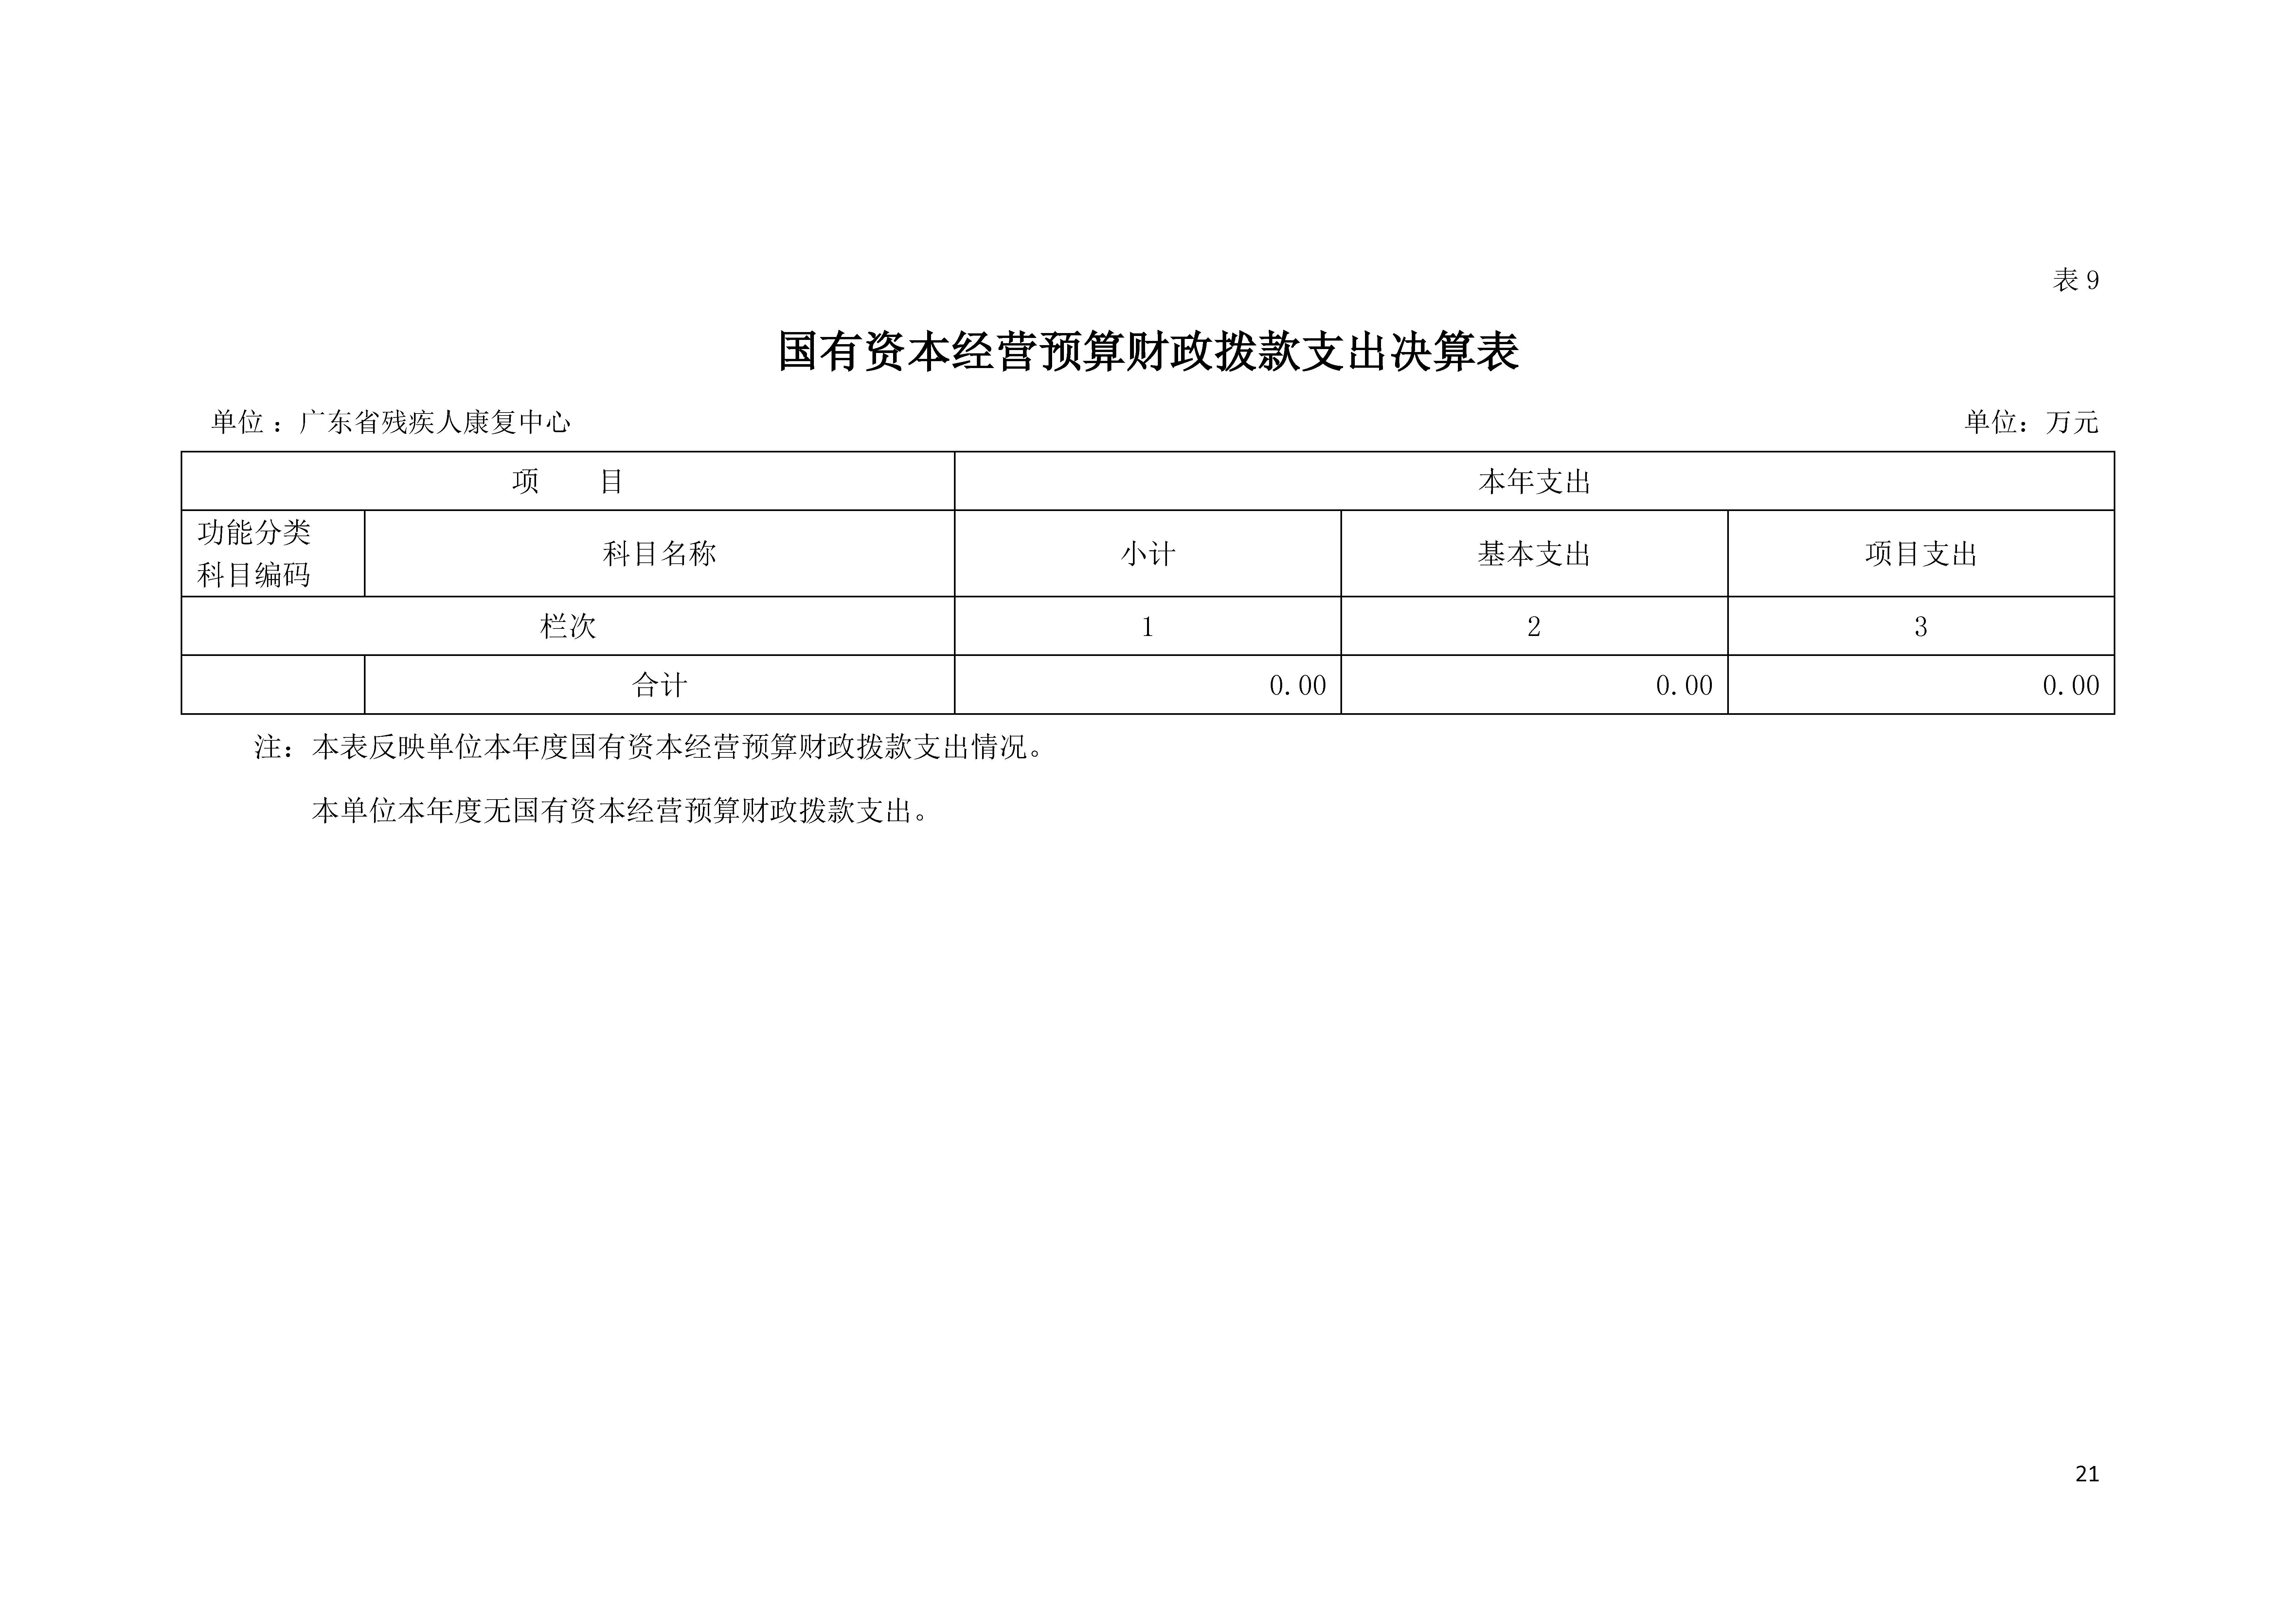 2021年广东省残疾人康复中心部门决算 0629_页面_21.jpg